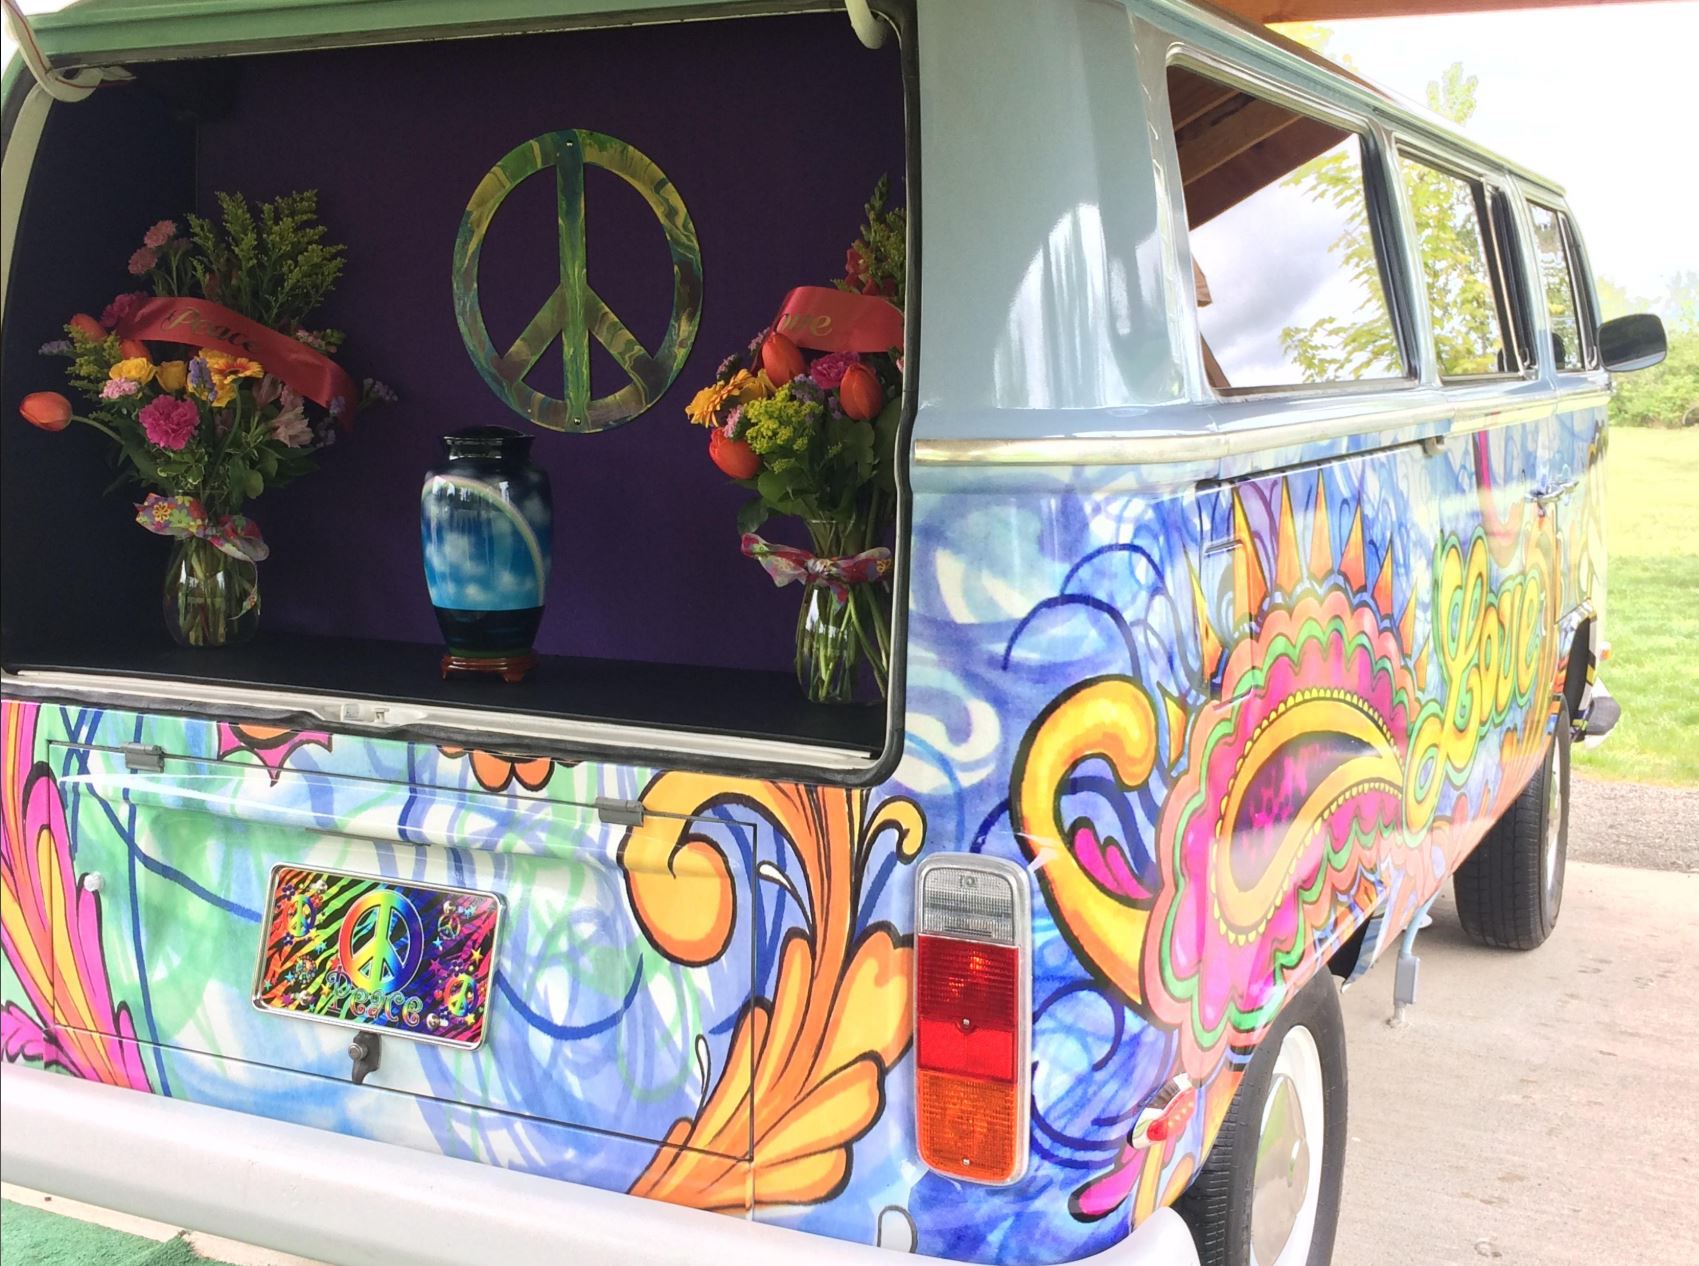 Long, strange trip ending for VW's hippie van